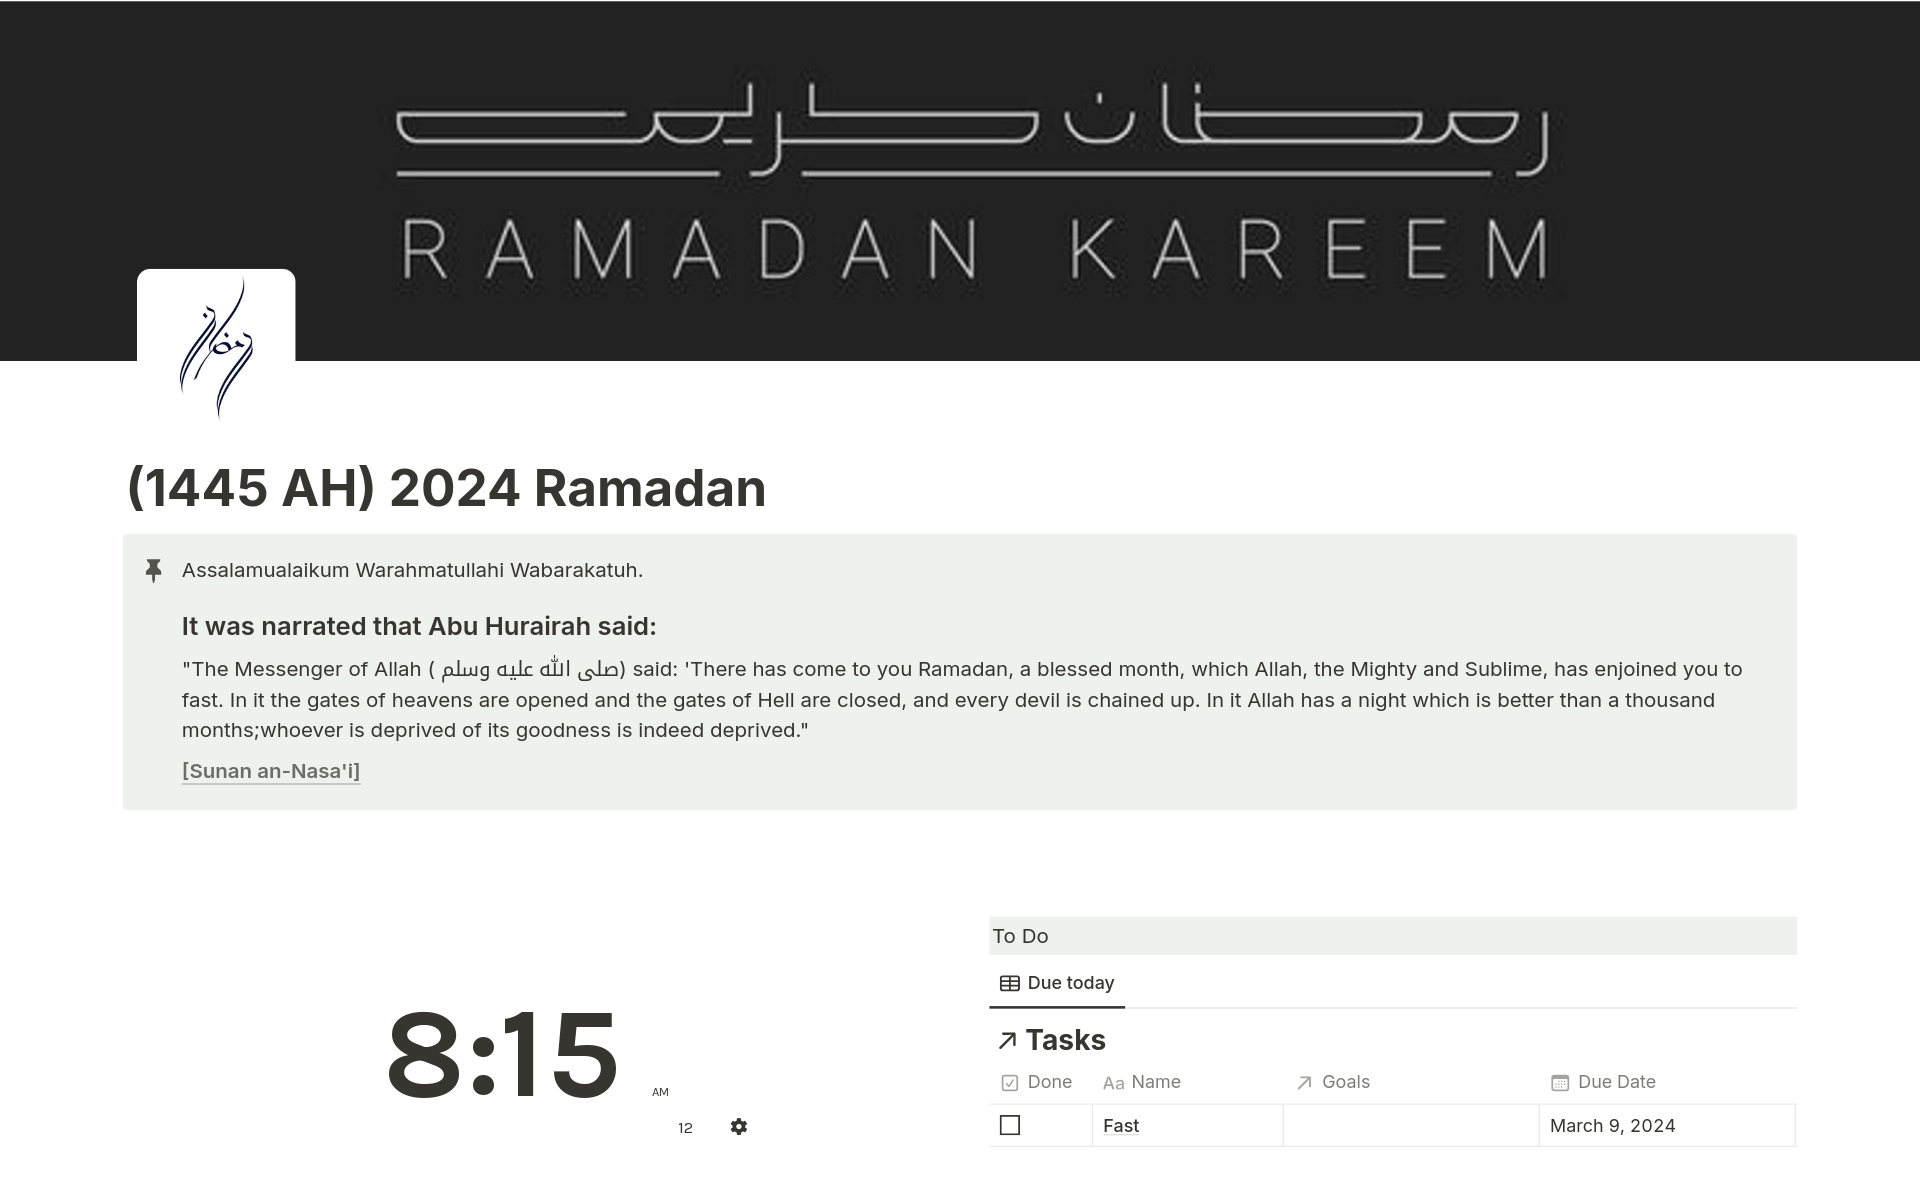 En förhandsgranskning av mallen för (1445 AH) 2024 Ramadan